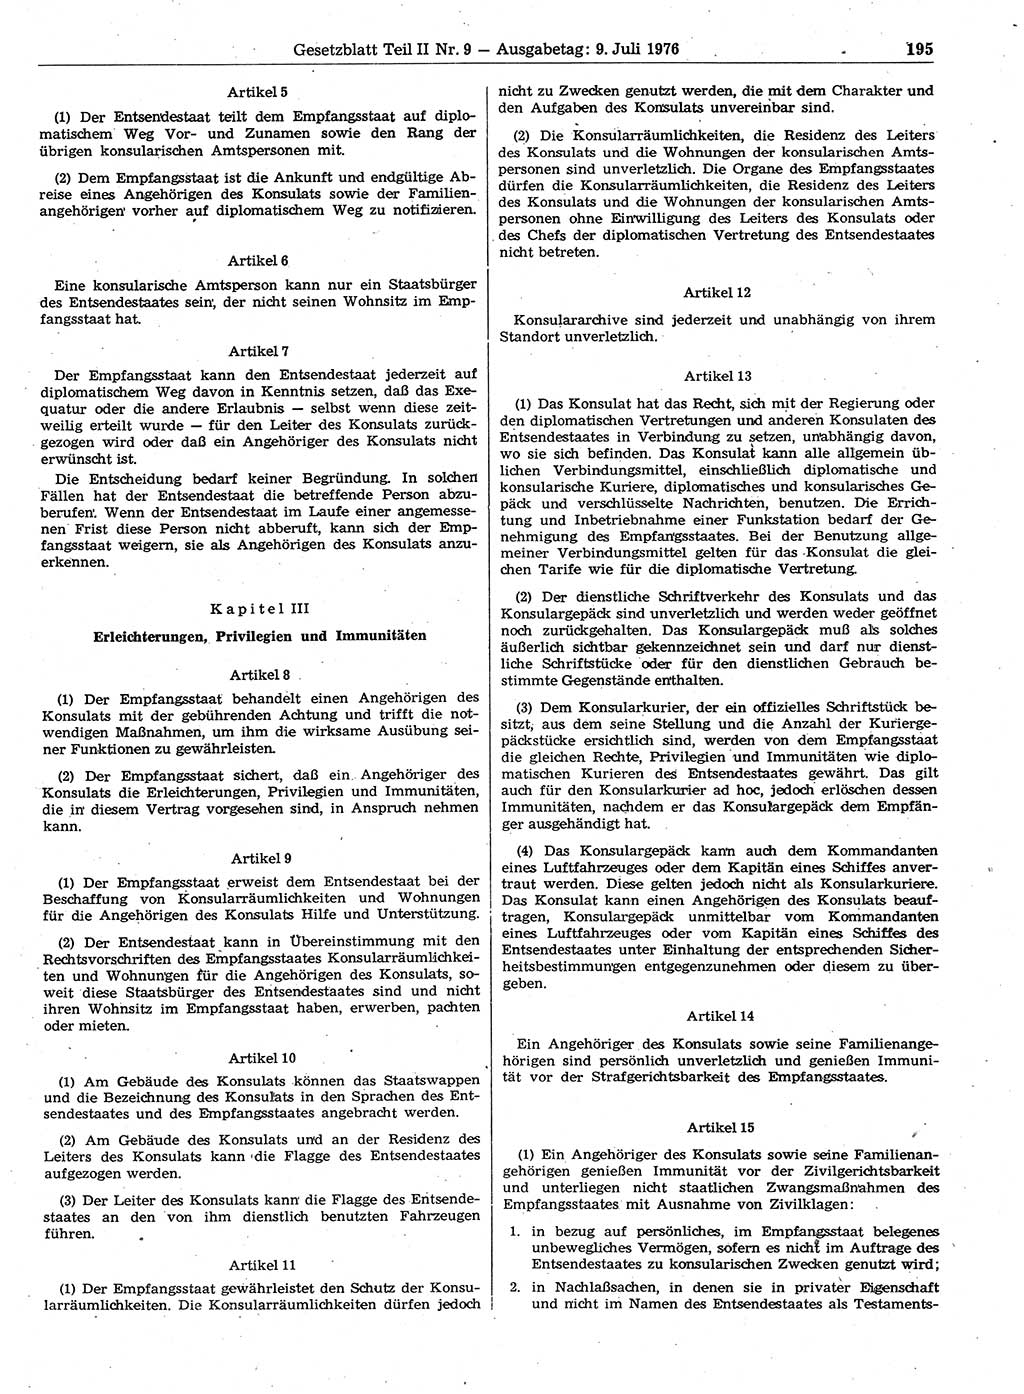 Gesetzblatt (GBl.) der Deutschen Demokratischen Republik (DDR) Teil ⅠⅠ 1976, Seite 195 (GBl. DDR ⅠⅠ 1976, S. 195)